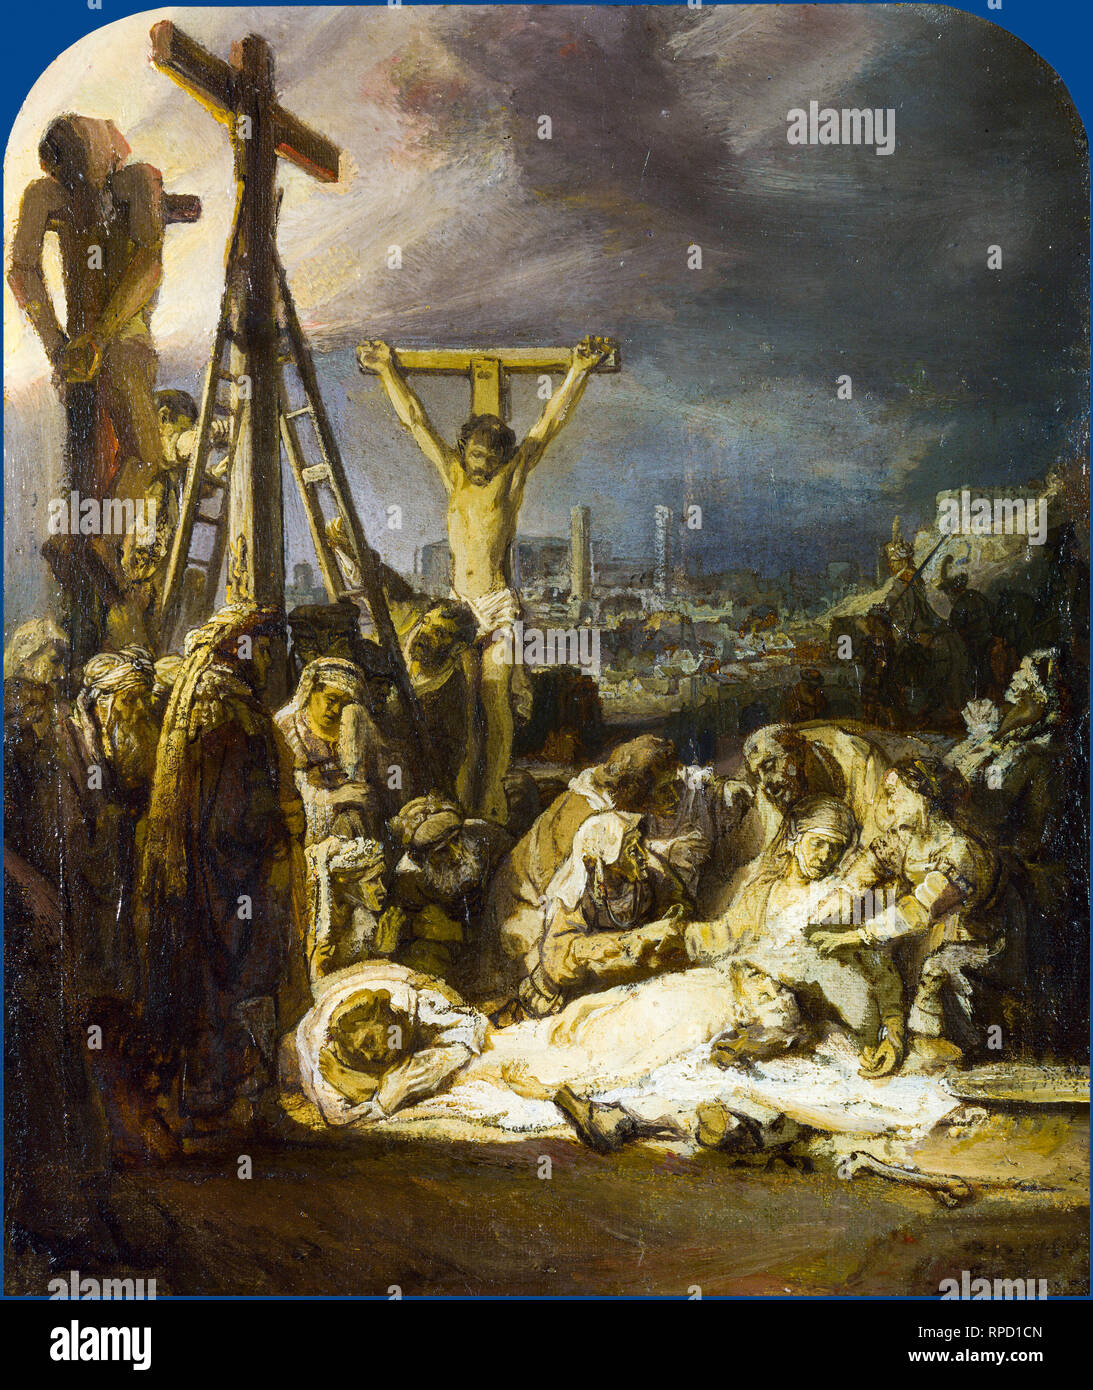 Il compianto su Cristo morto, Rembrandt, c. 1635, la pittura Foto Stock